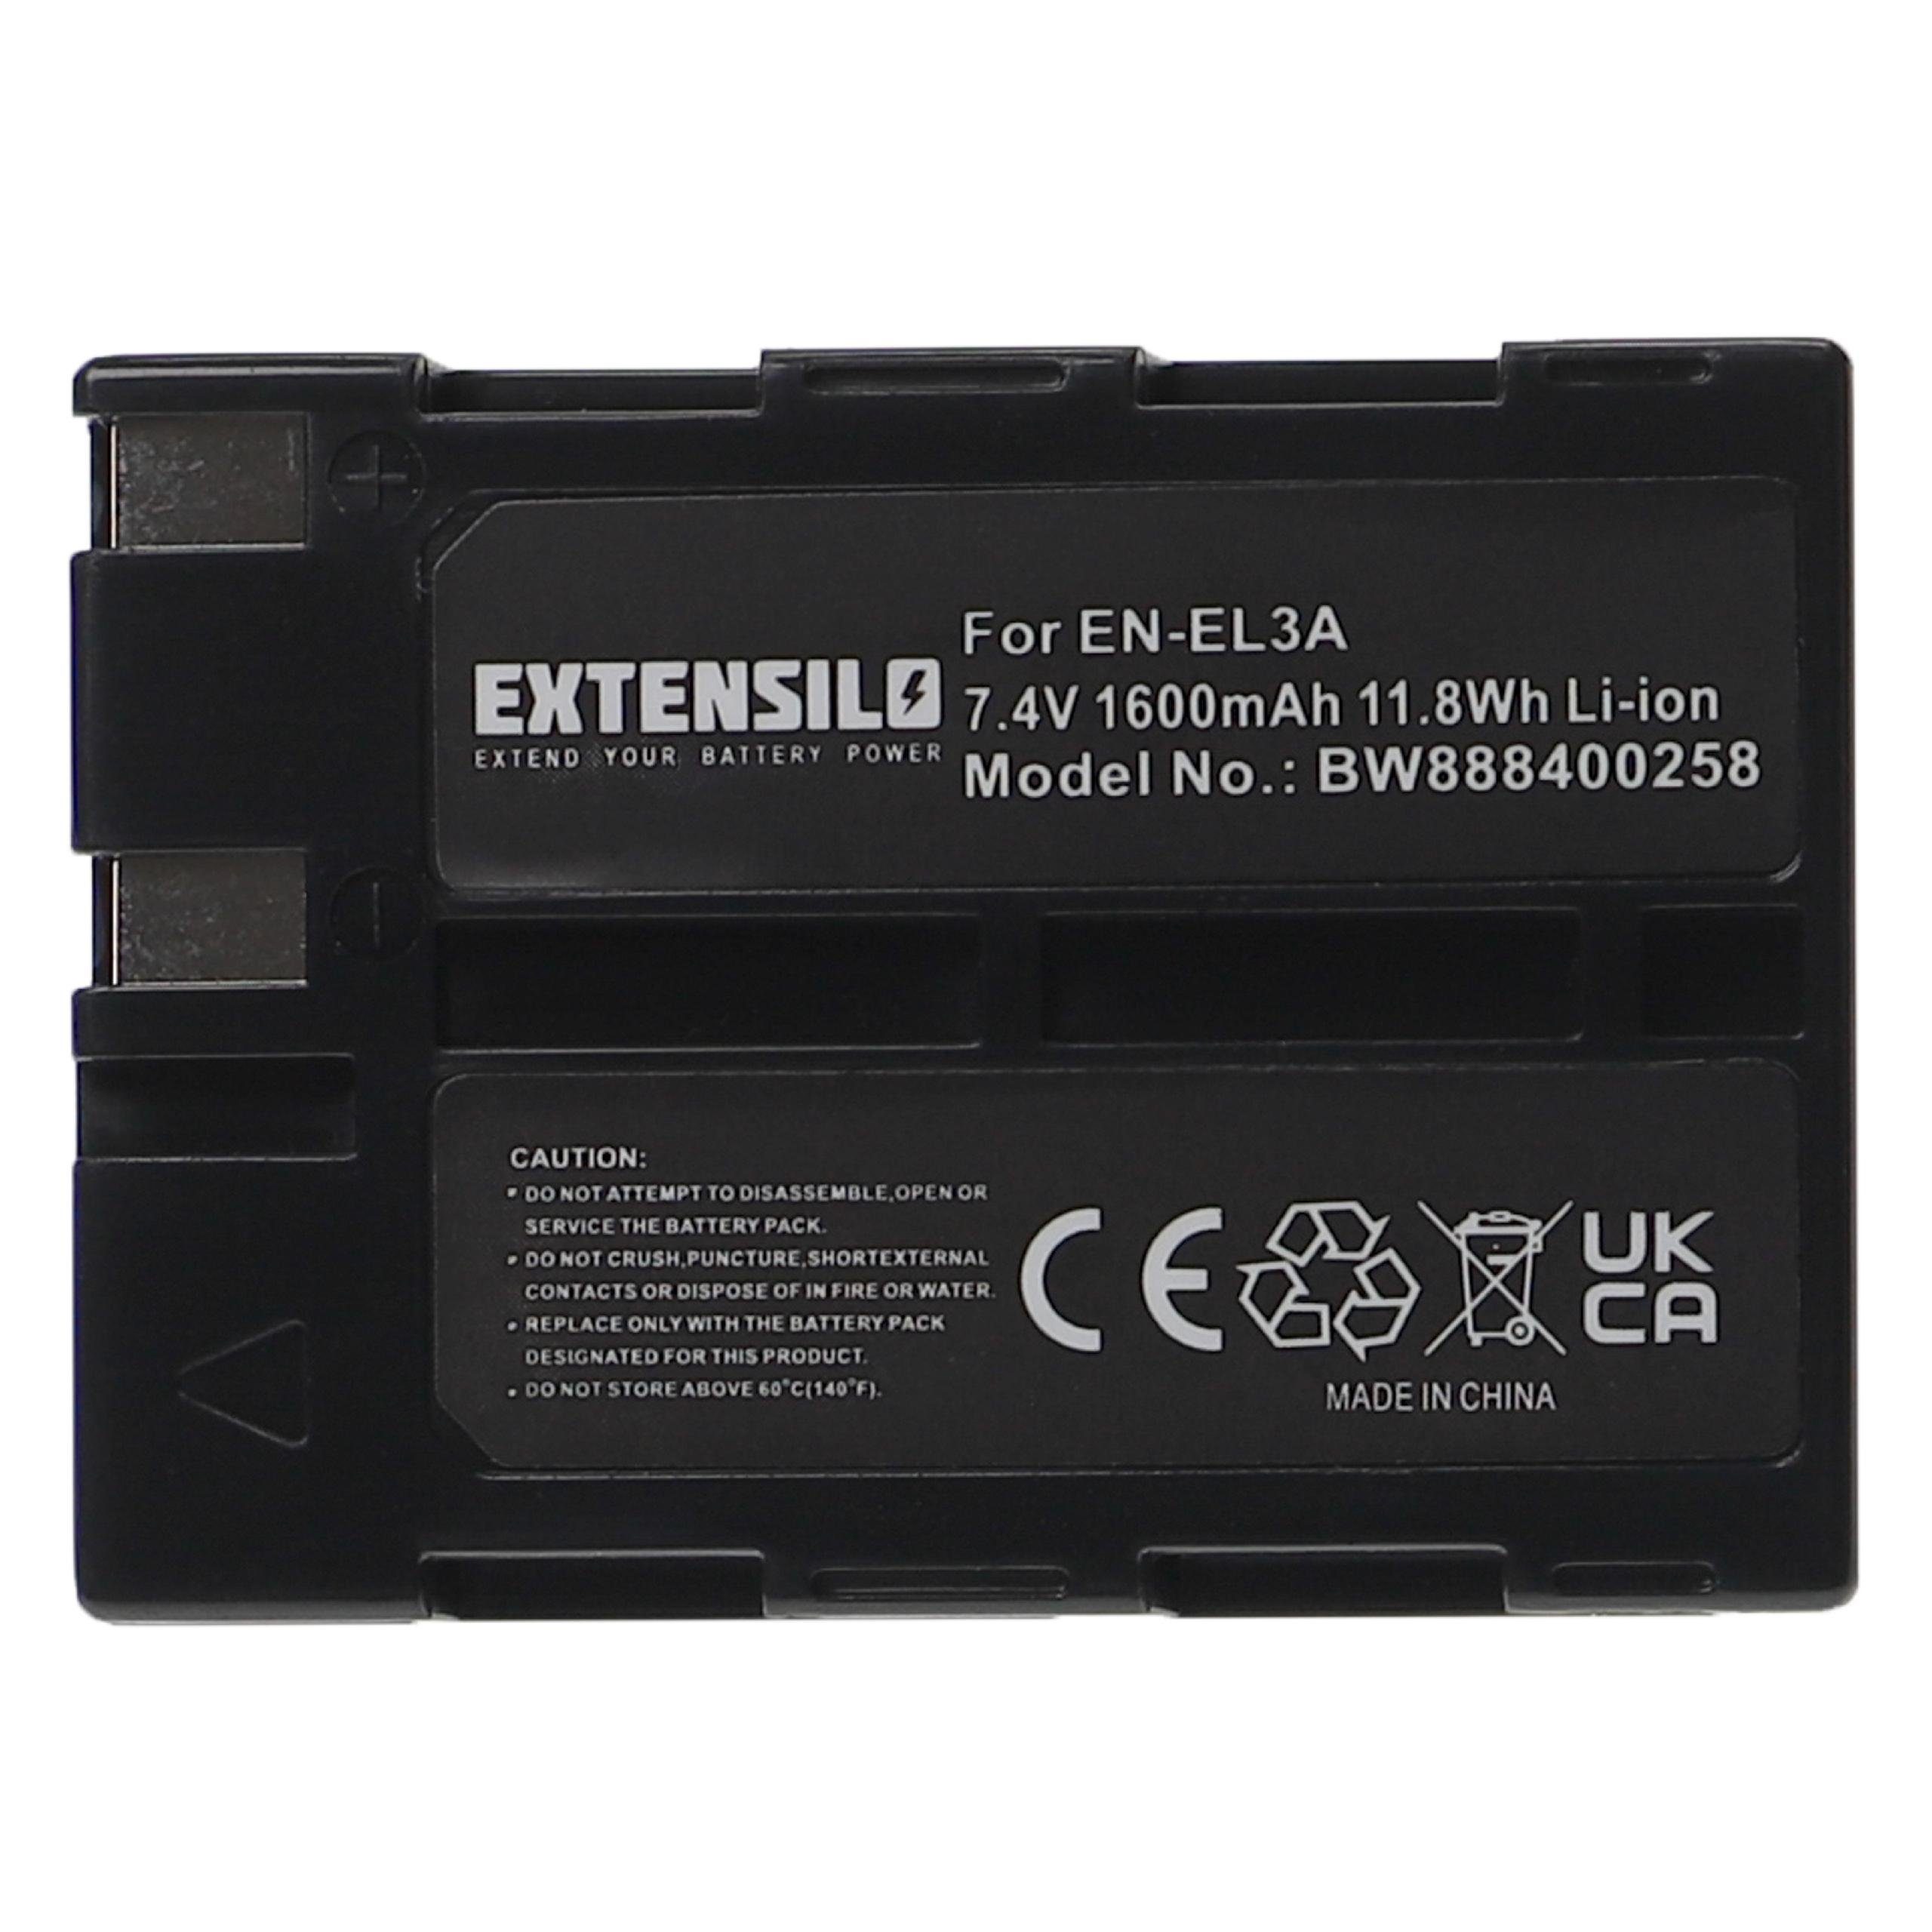 Extensilo Ersatz für 1600 EN-EL3a mAh Nikon für Kamera-Akku (7,4 V) Li-Ion EN-EL3